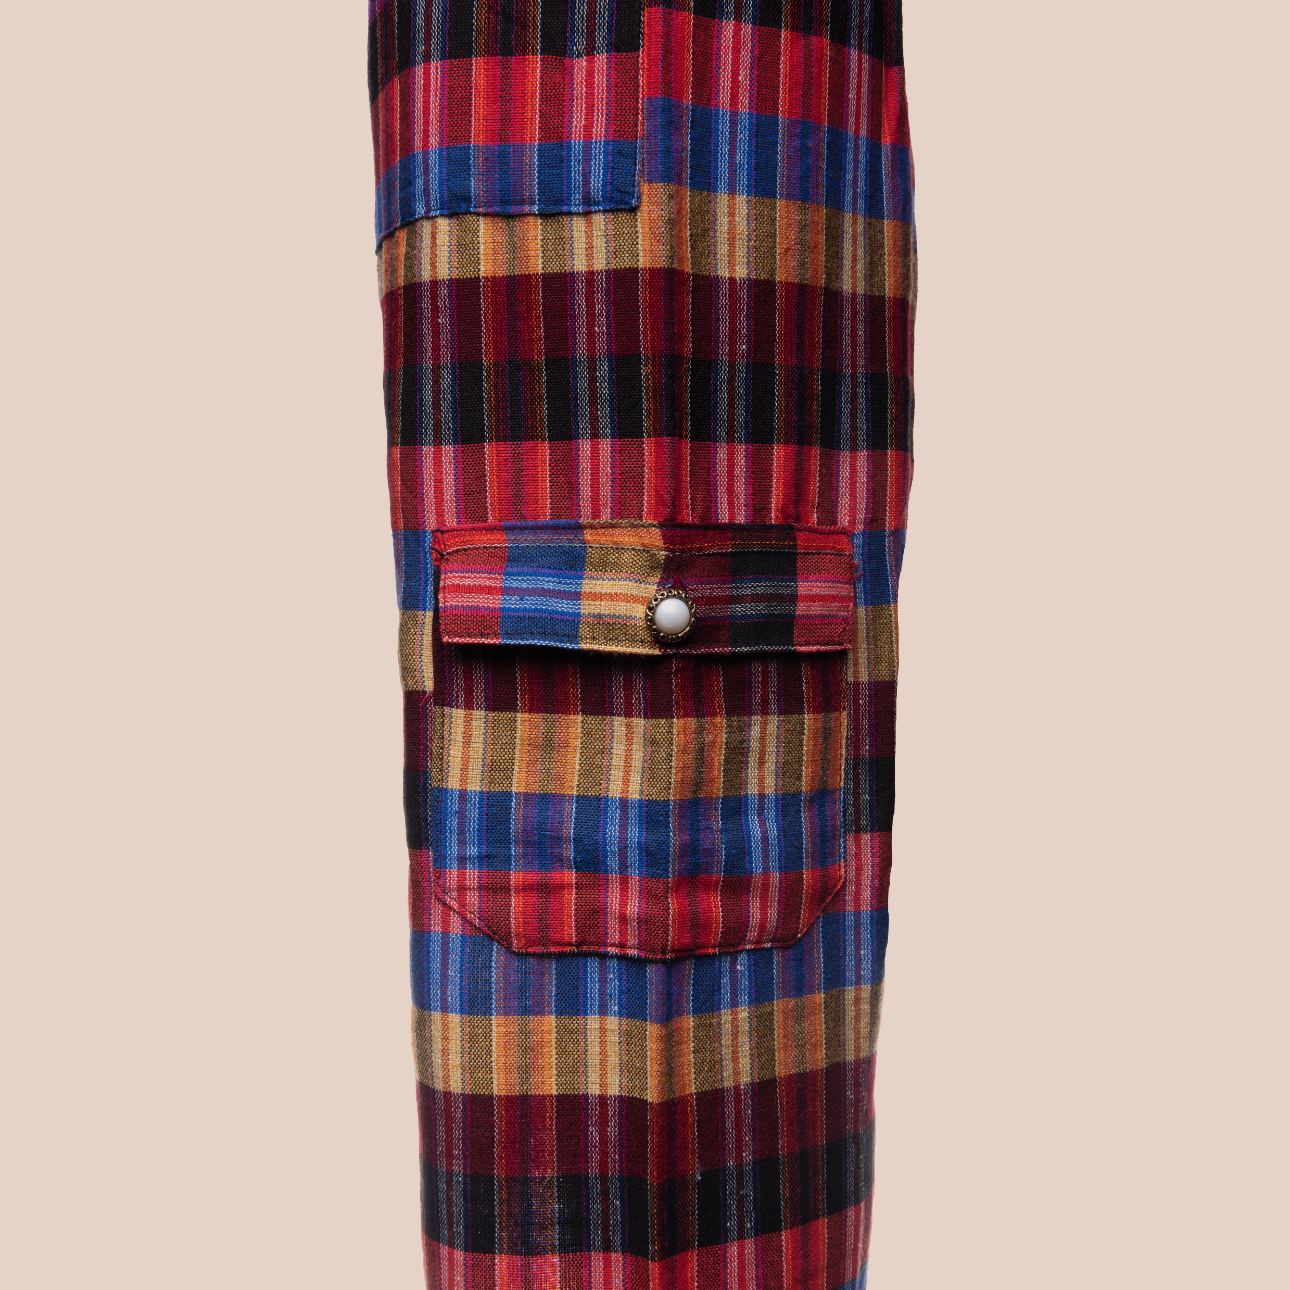 Image d'un pantalon a imprimé rayures , pantalon tendance en coton organique arborant des couleurs vives et audacieuses